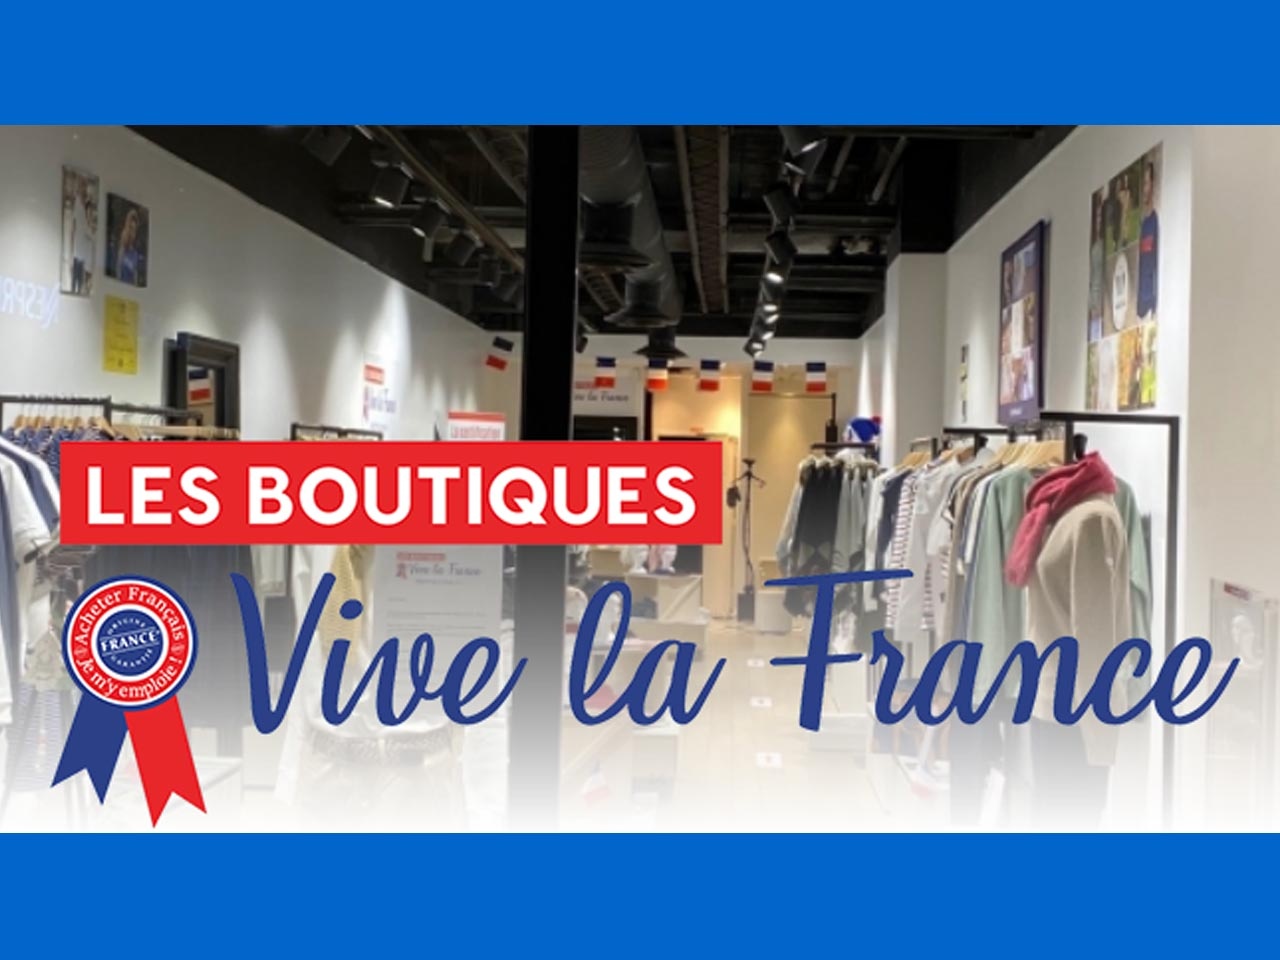 Les Boutiques Vive la France ouvrent une nouvelle boutique en région parisienne, au centre commercial Westfield Parly 2